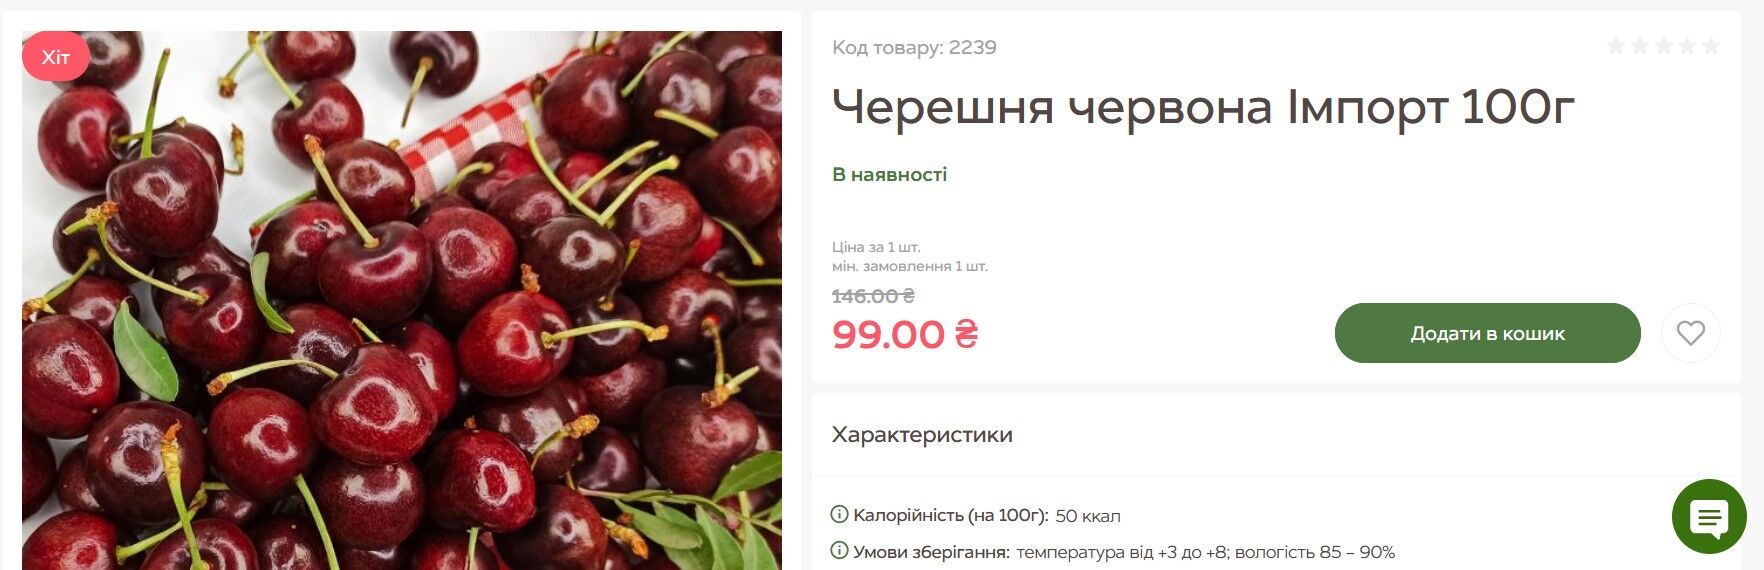 В продуктовом интернет-магазине Freshmart акционная цена на черешню – 990 грн/кг